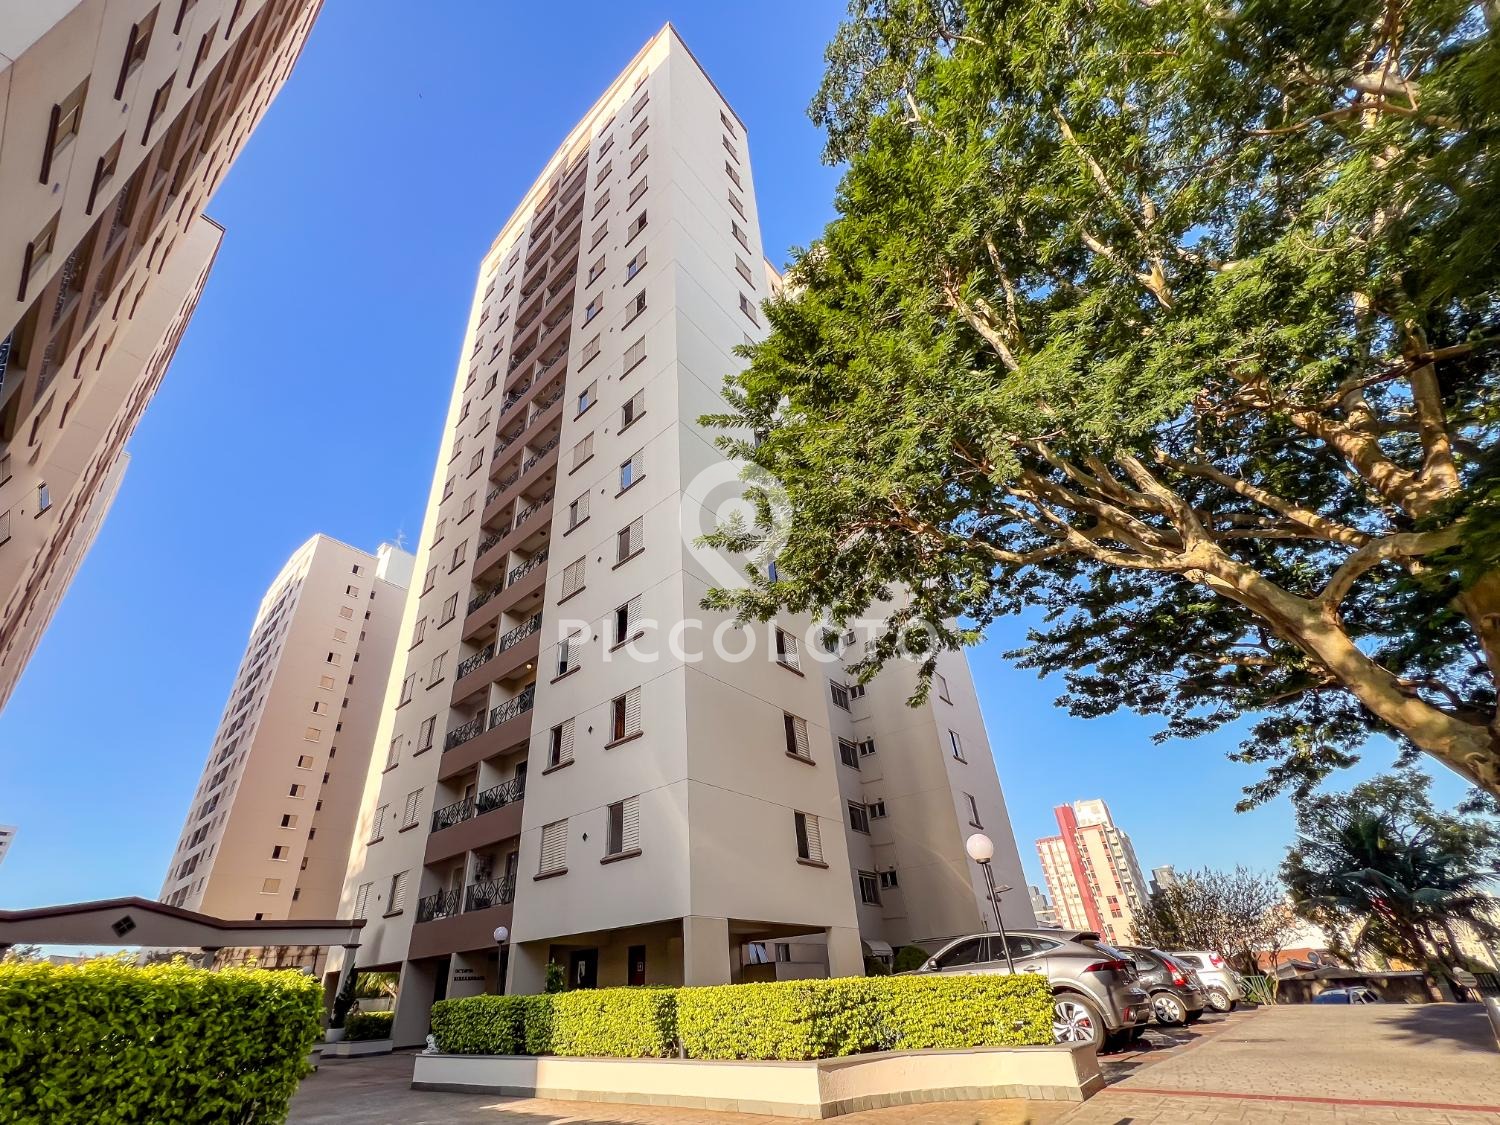 Piccoloto - Apartamento à venda no Jardim Guanabara em Campinas